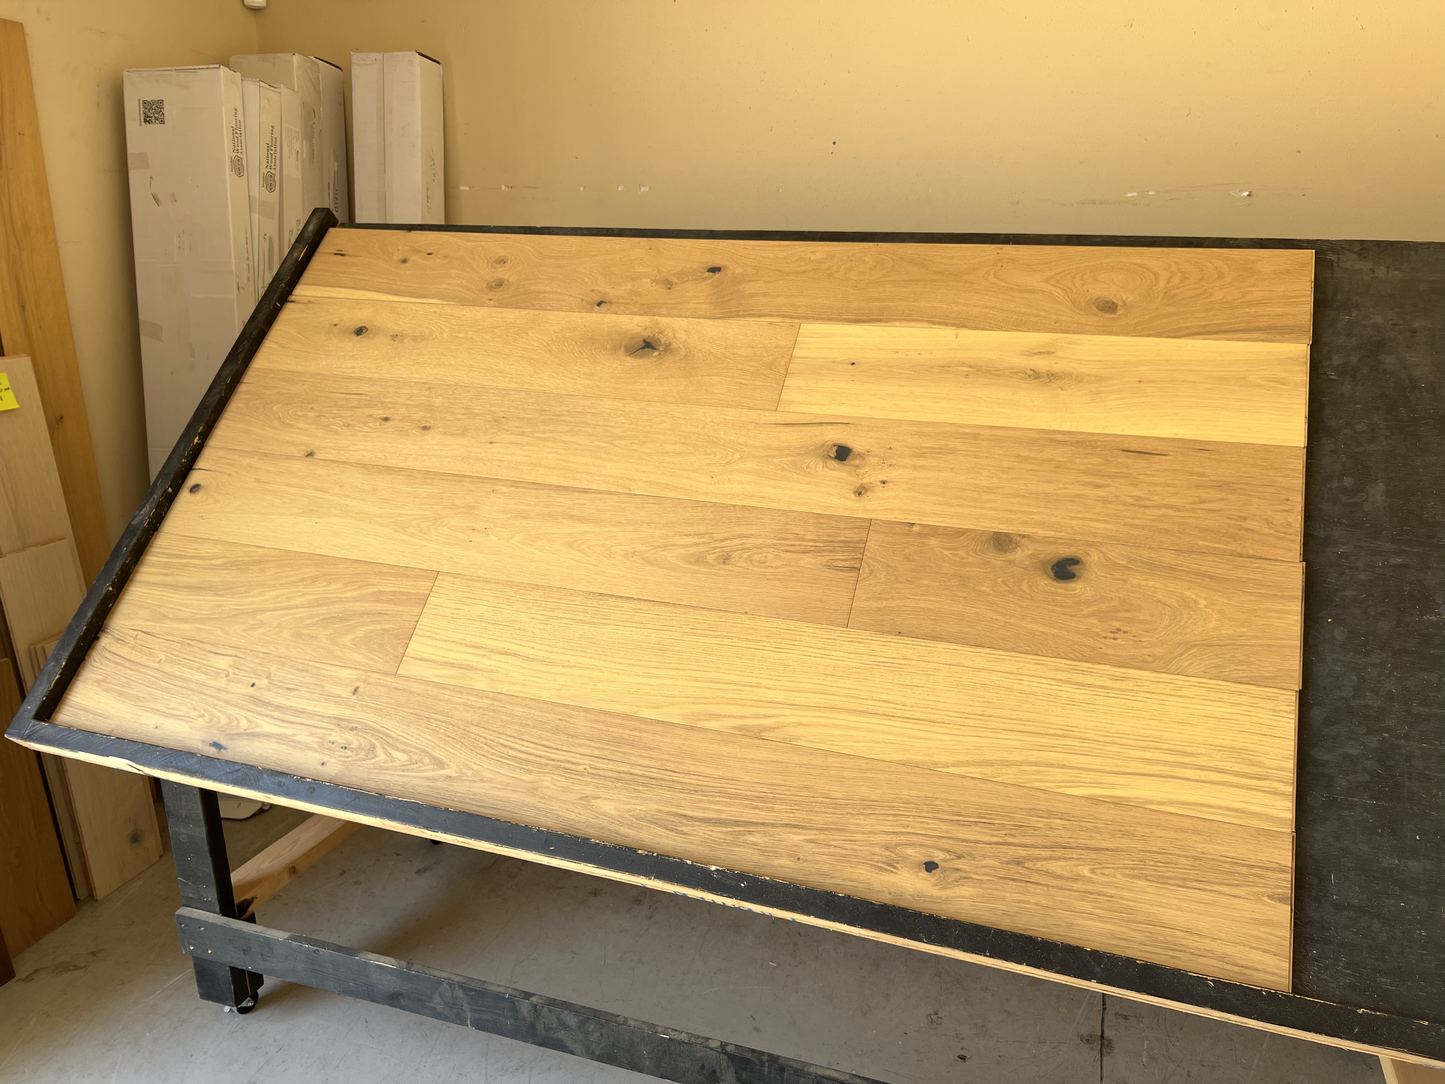 7 1/2" x 1/2" Engineered European White Oak Madrid  Hardwood Flooring